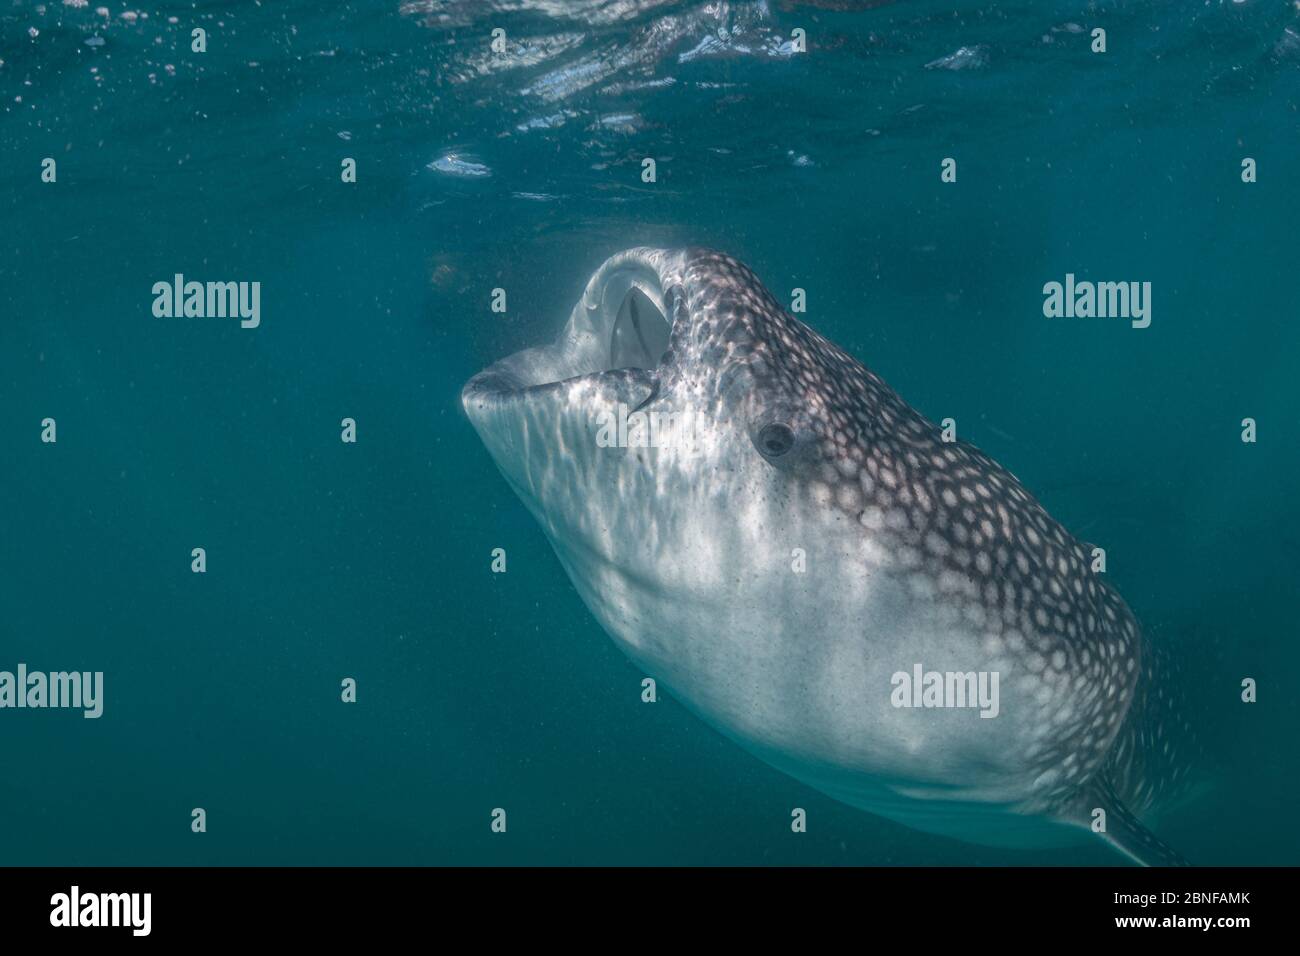 Un requin-baleine juvénile se nourrissant juste en dessous de la surface Banque D'Images